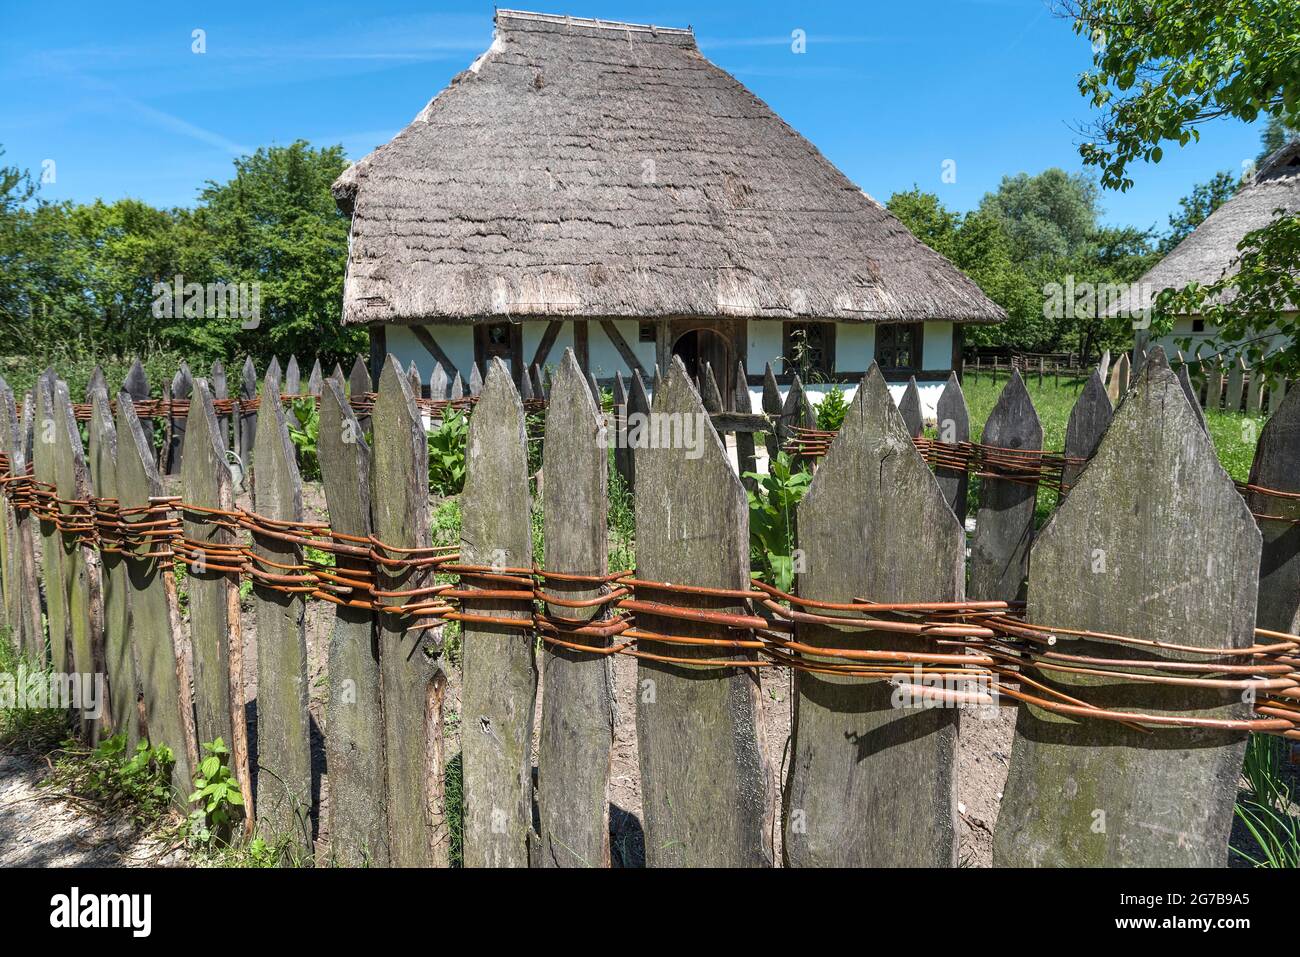 Clôture en bois reliée à des barres de saules, derrière une maison suédoise, construite en 1554, petite ferme de style architectural médiéval tardif, Franconian Open Banque D'Images